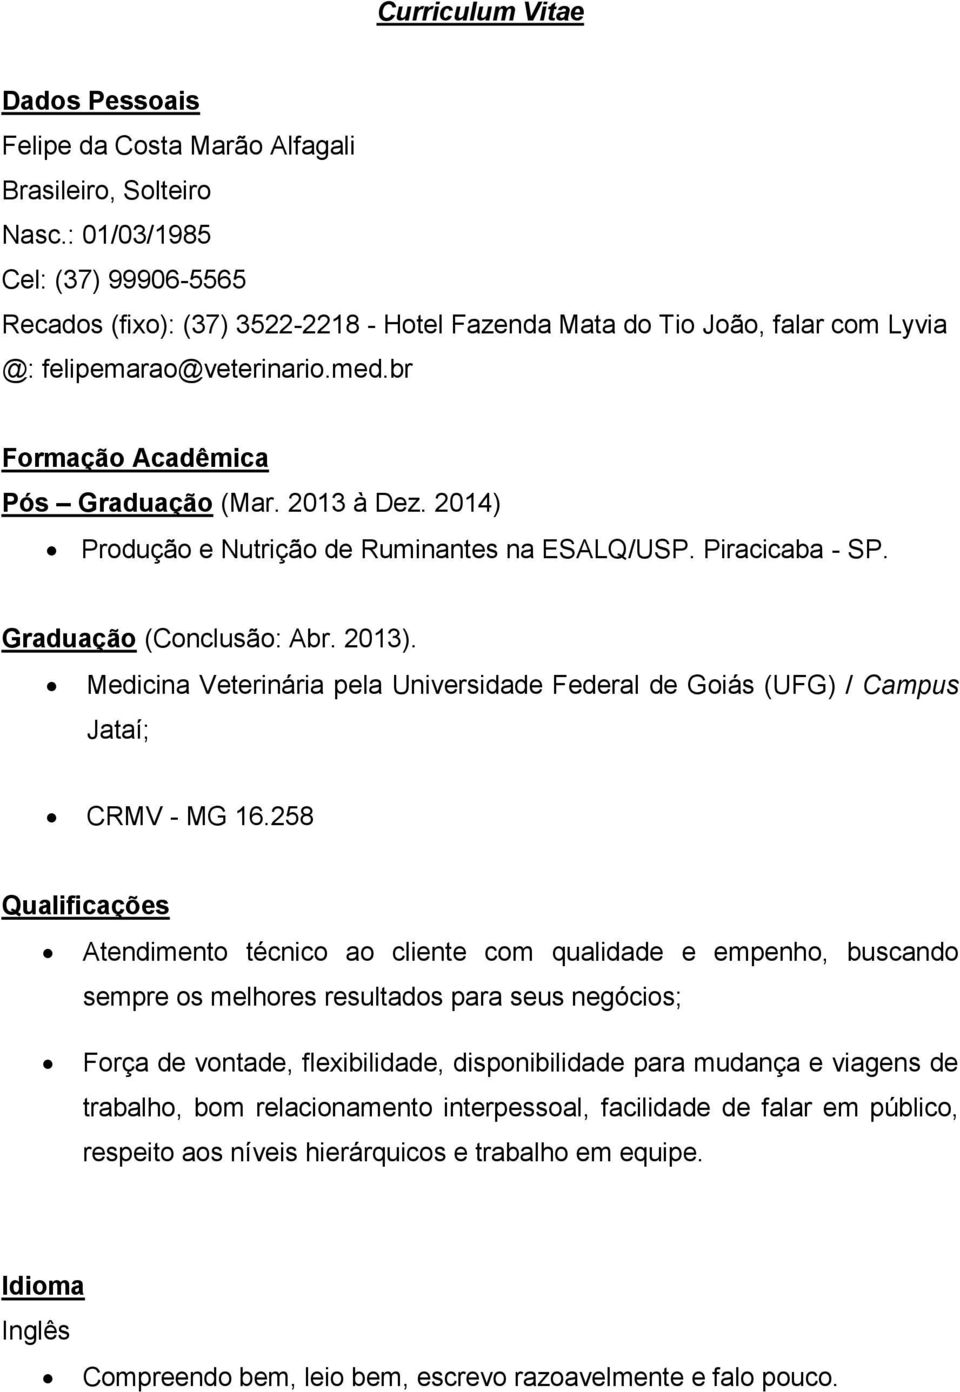 2014) Produção e Nutrição de Ruminantes na ESALQ/USP. Piracicaba - SP. Graduação (Conclusão: Abr. 2013). Medicina Veterinária pela Universidade Federal de Goiás (UFG) / Campus Jataí; CRMV - MG 16.